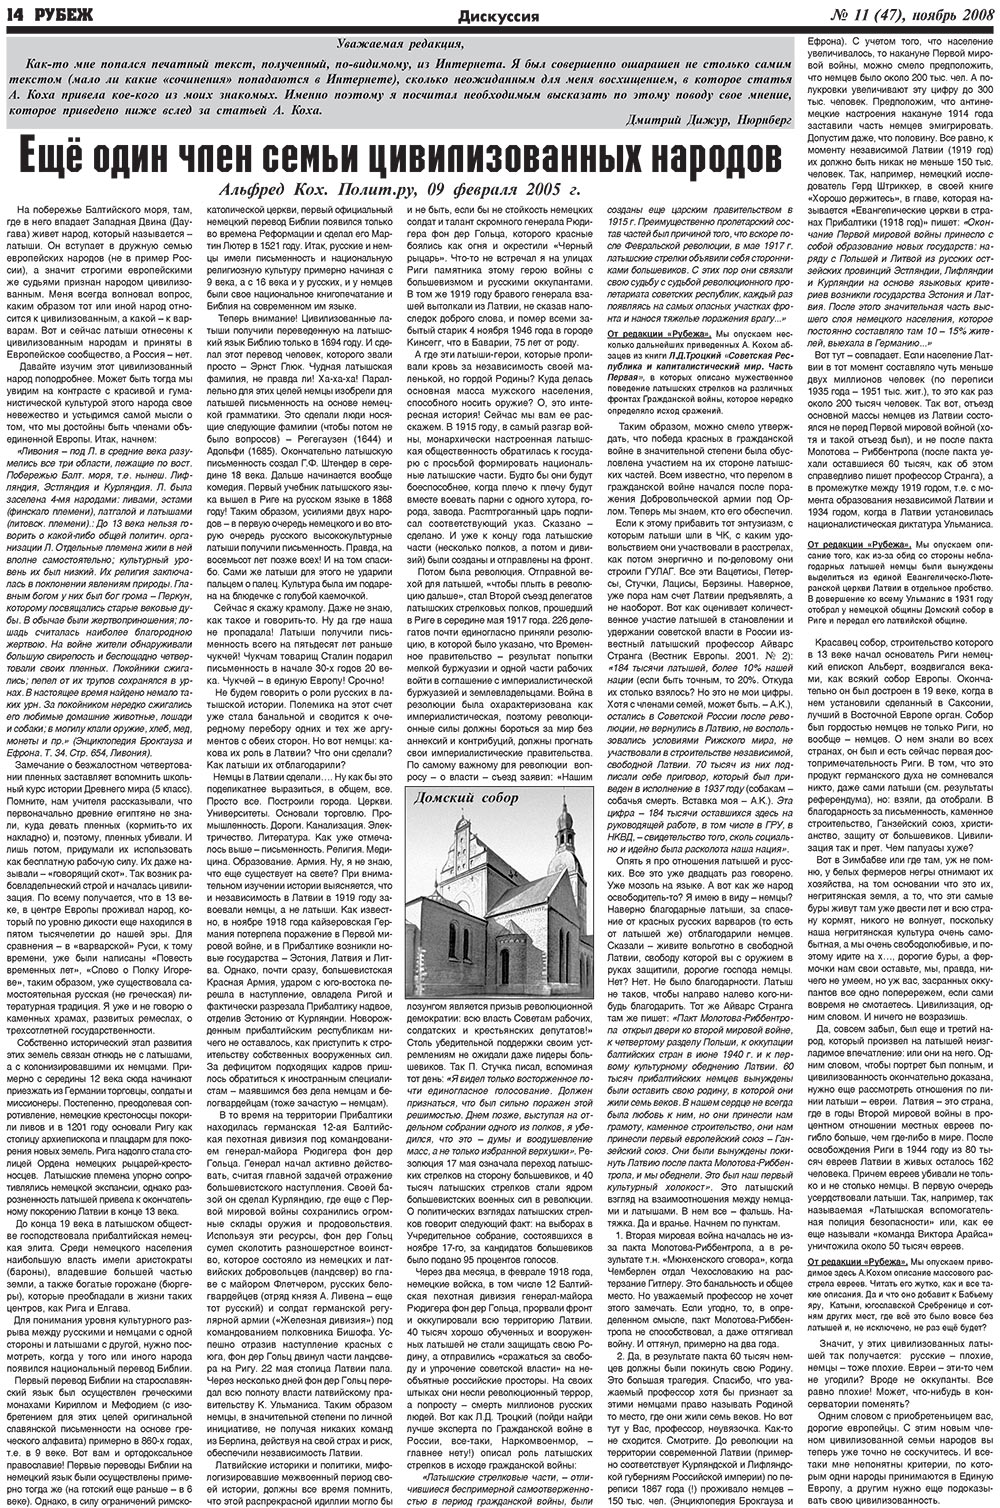 Рубеж (газета). 2008 год, номер 11, стр. 14